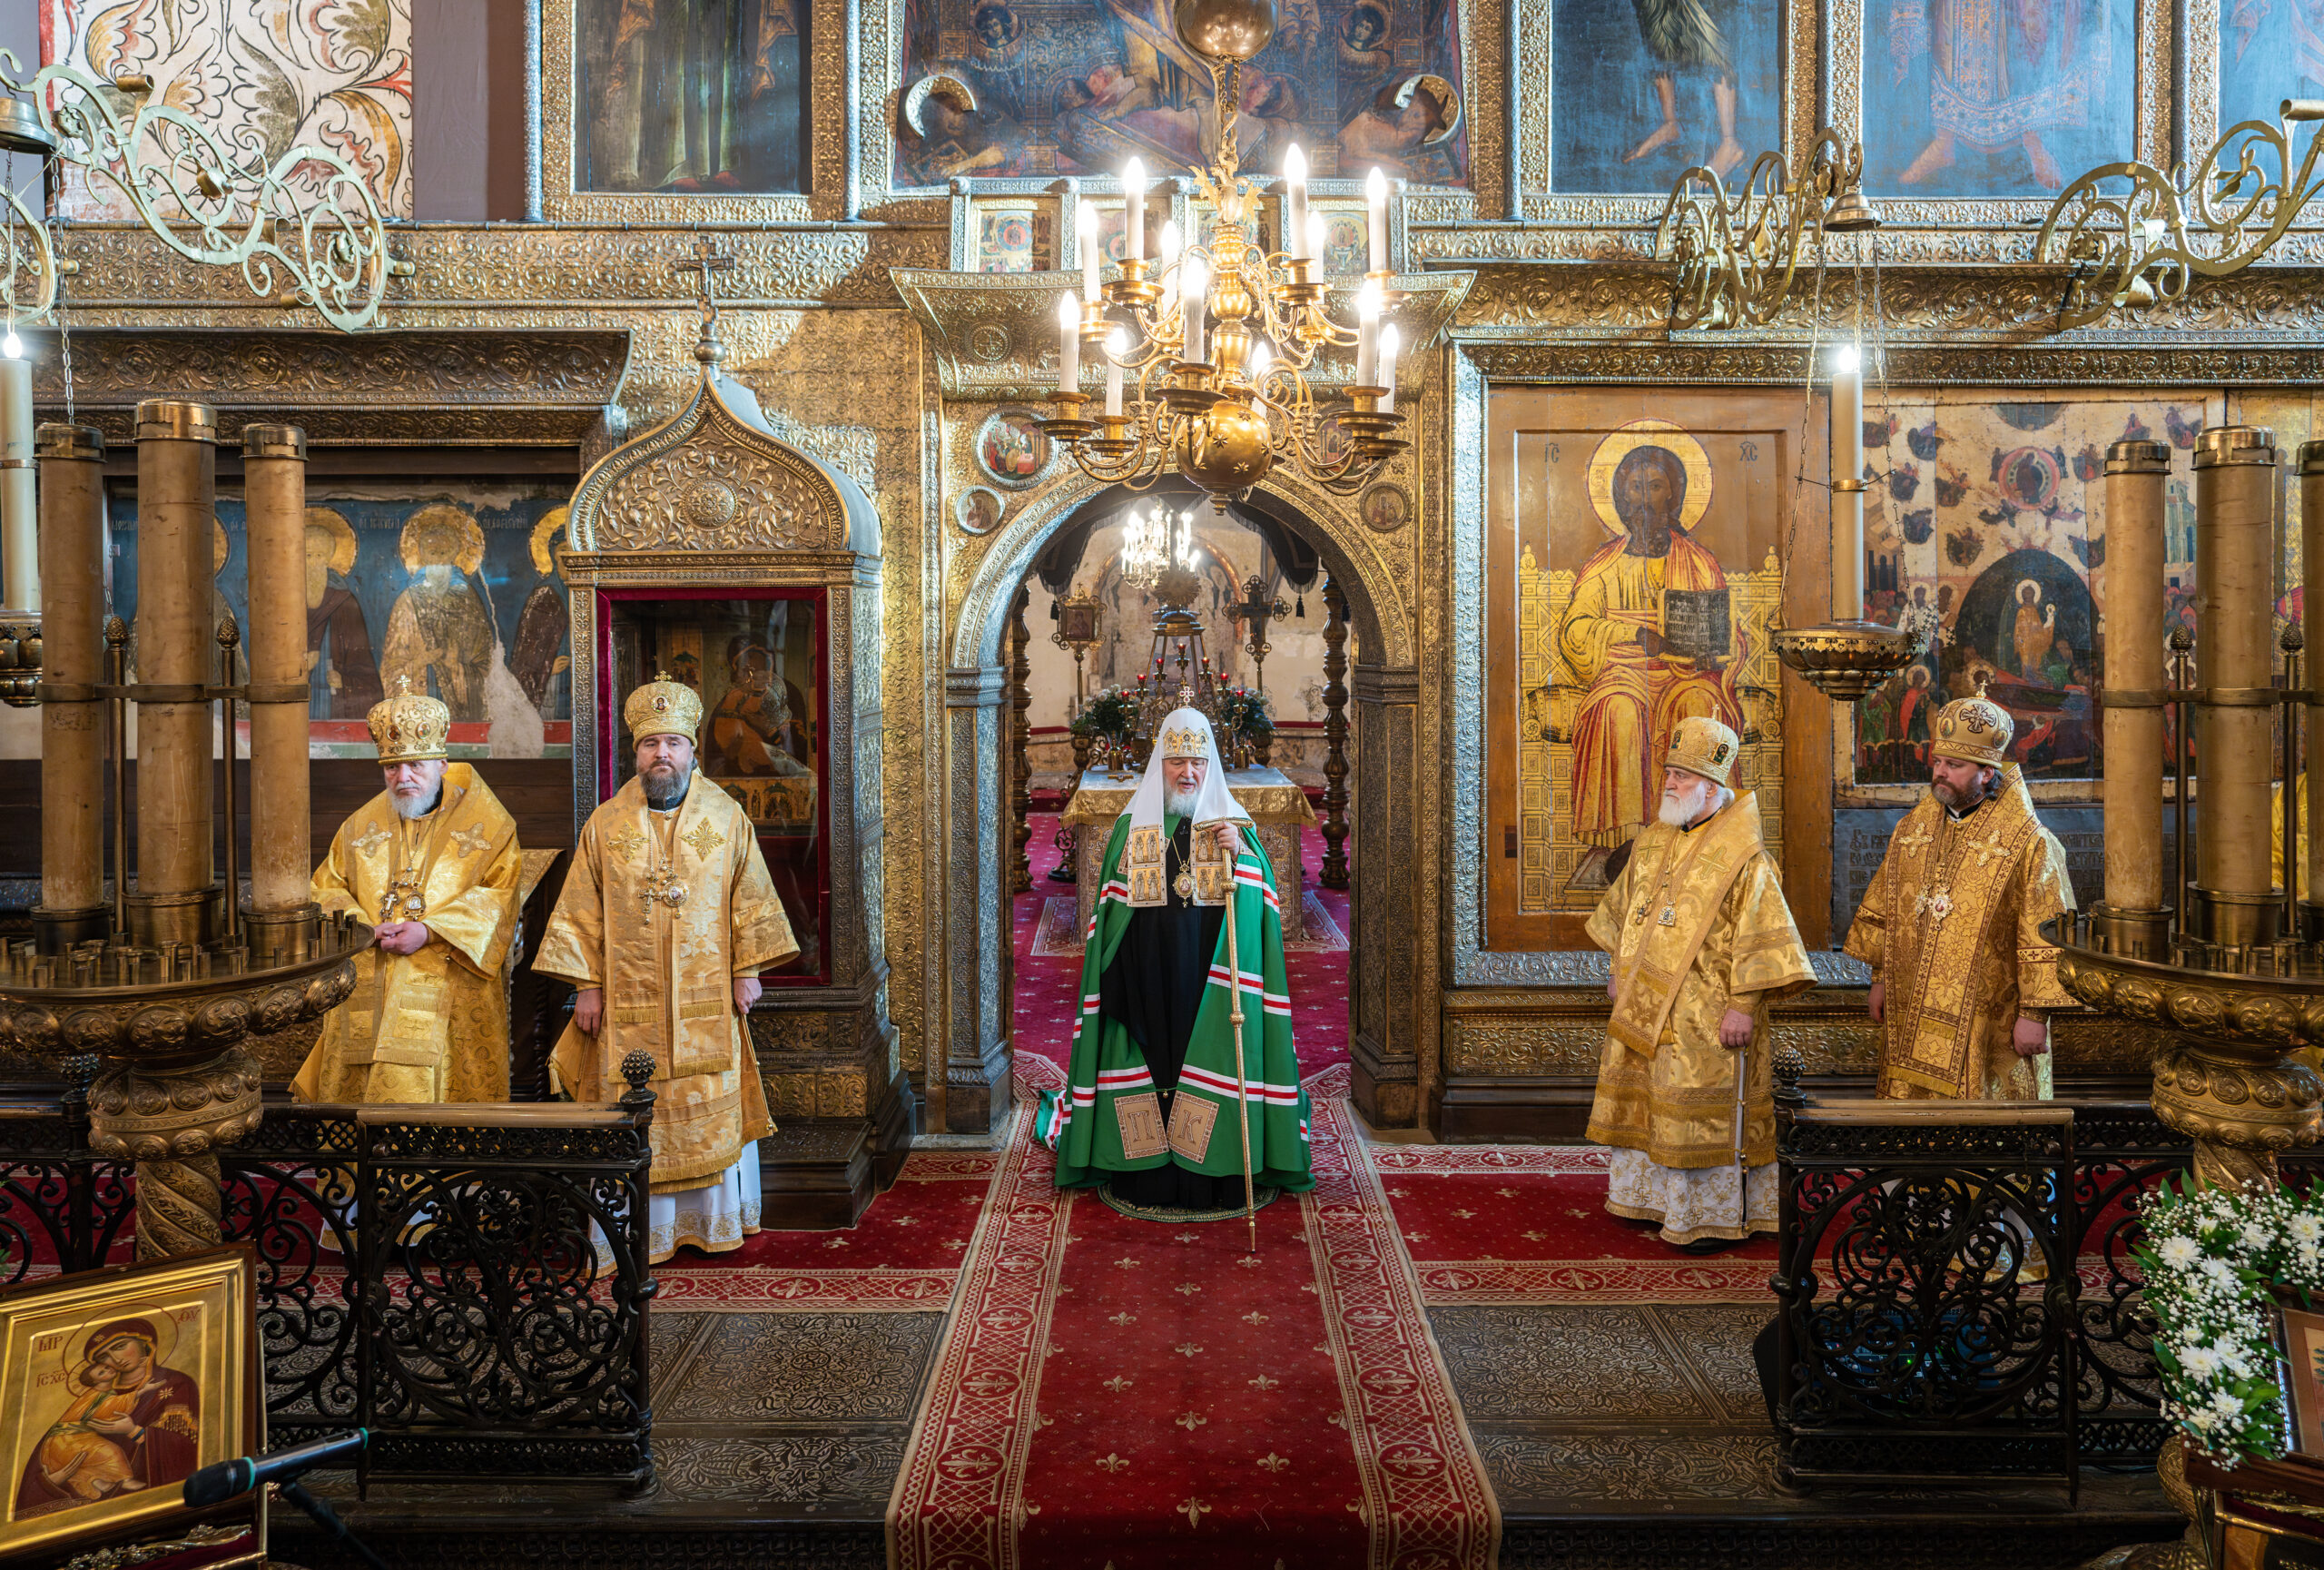 Патриаршая проповедь в день памяти святителя Филиппа Московского после Литургии в Успенском соборе Московского Кремля